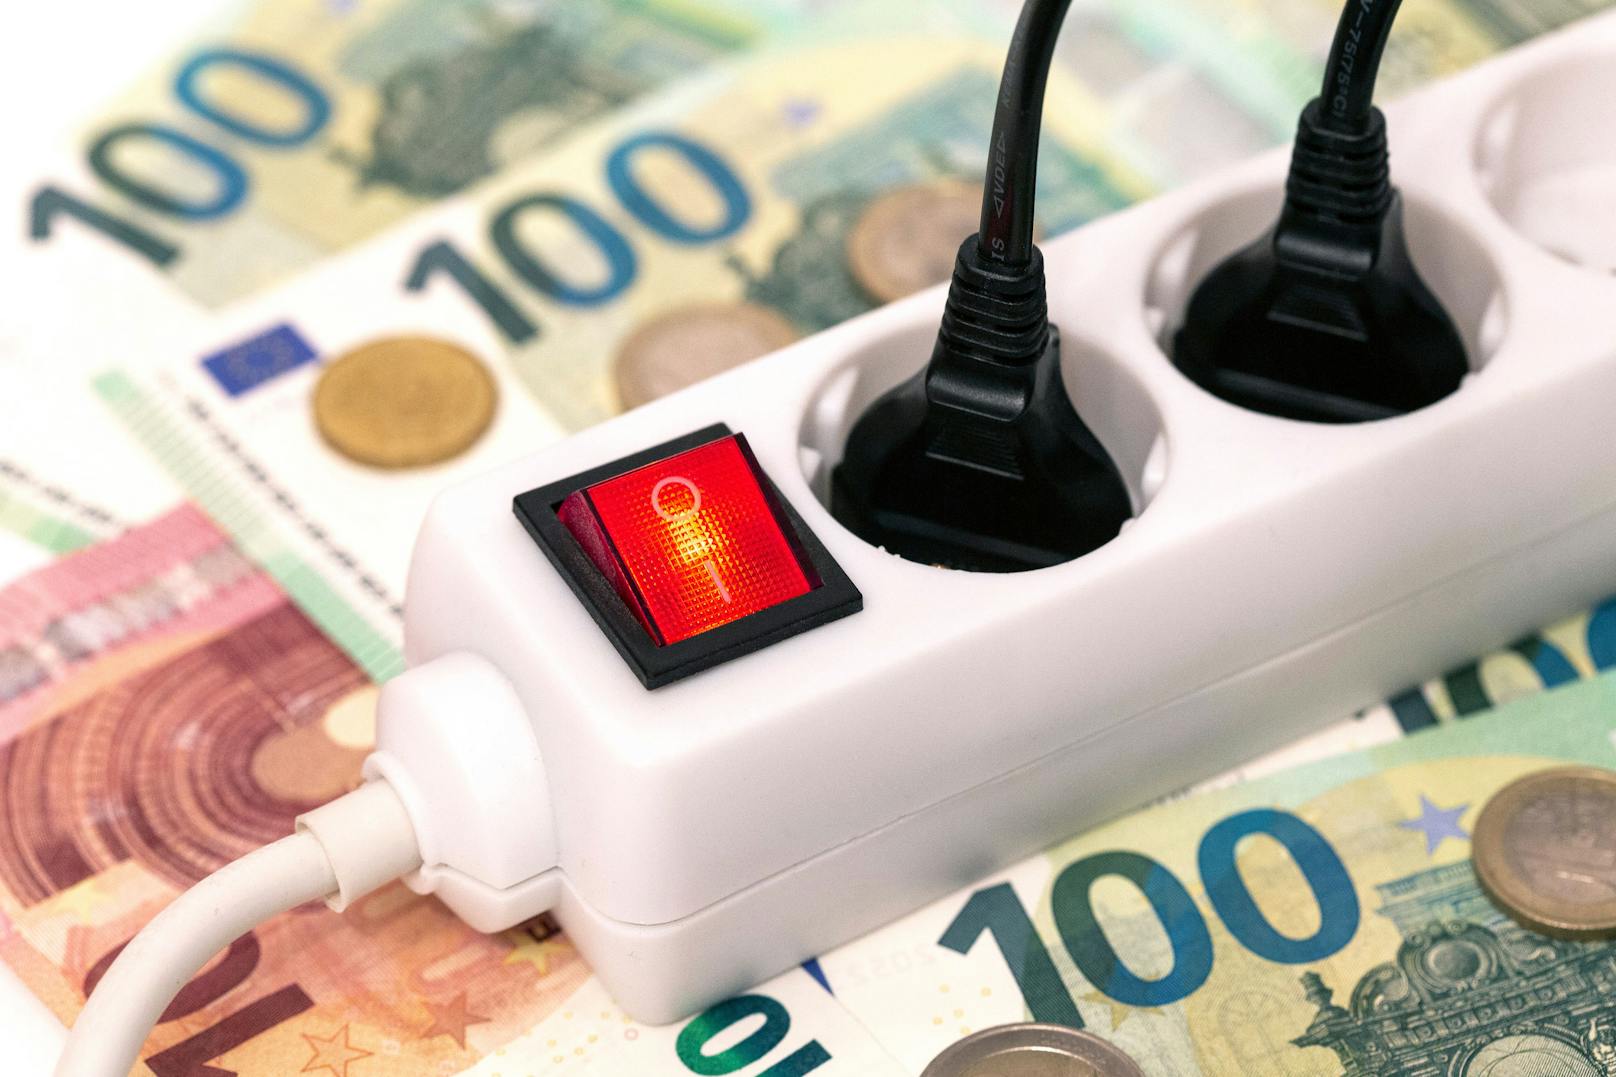 Strompreise stiegen extrem: Daher fordert FP jetzt "Raus aus Russland-Sanktionen"